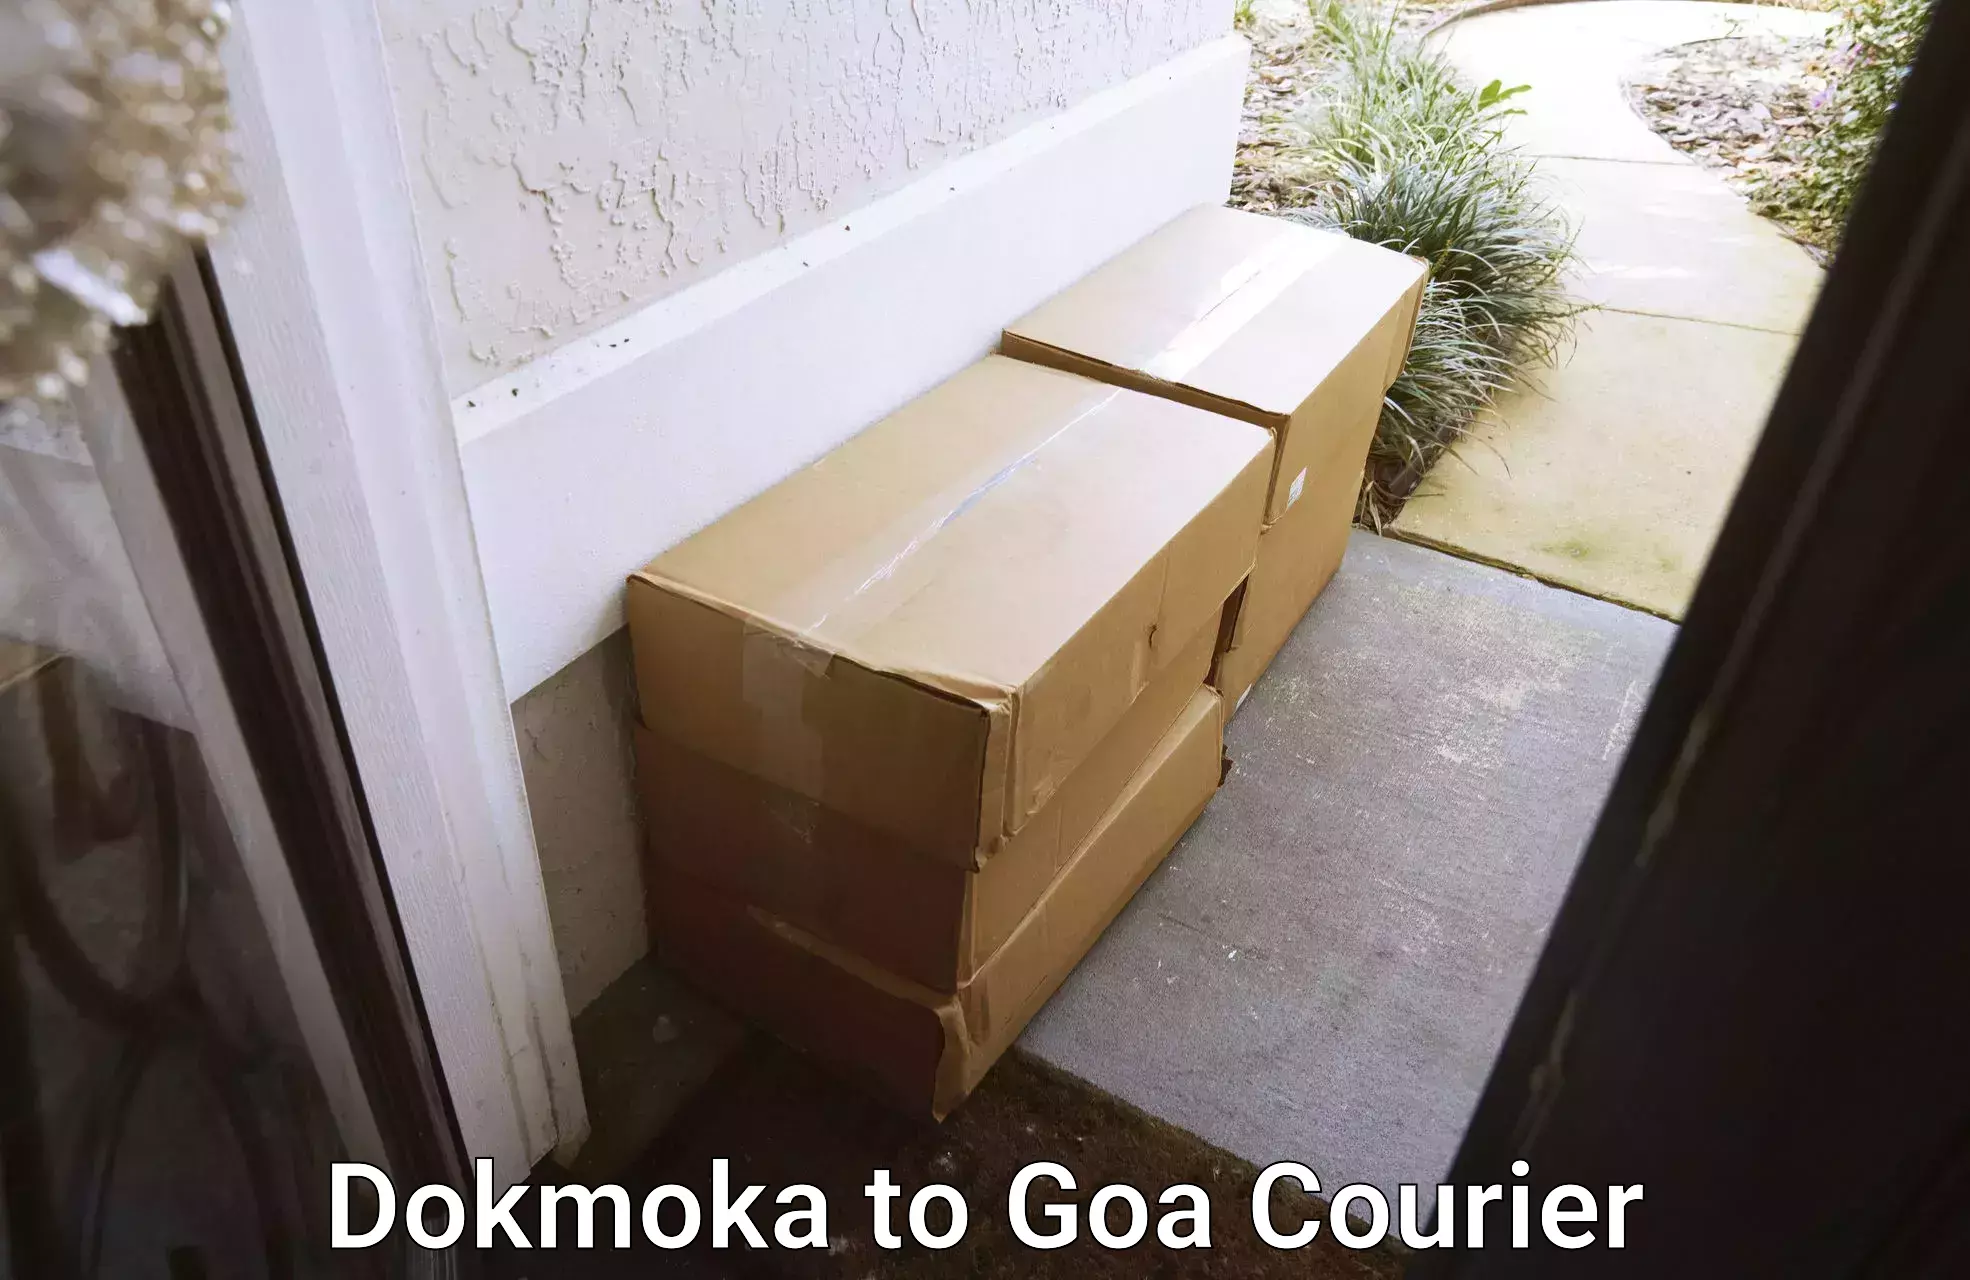 Next-day freight services Dokmoka to IIT Goa